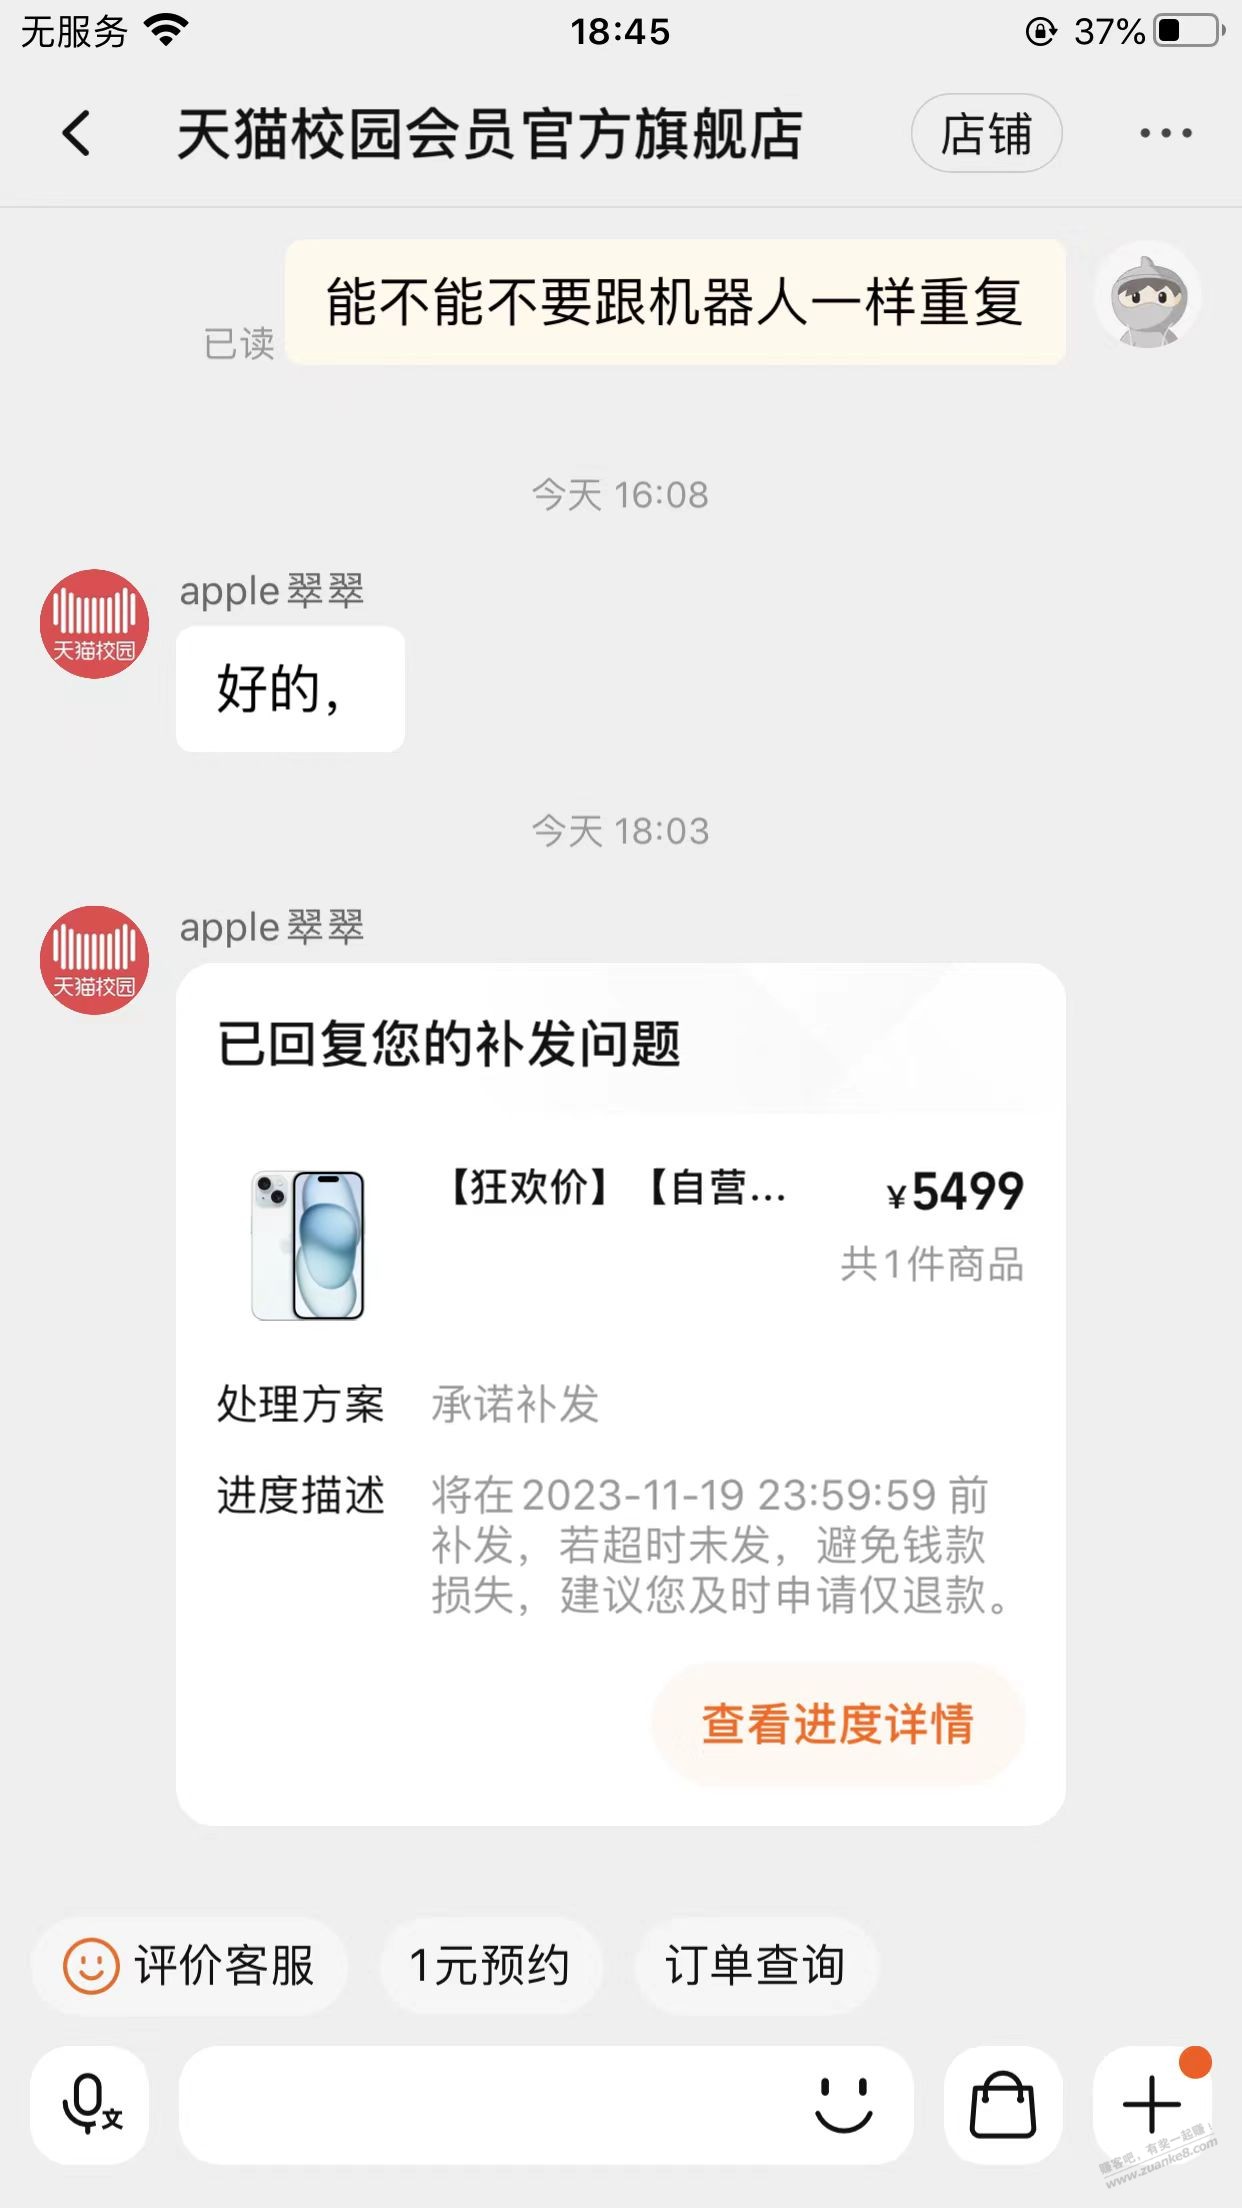 天猫校园苹果15申请100退款后续-惠小助(52huixz.com)